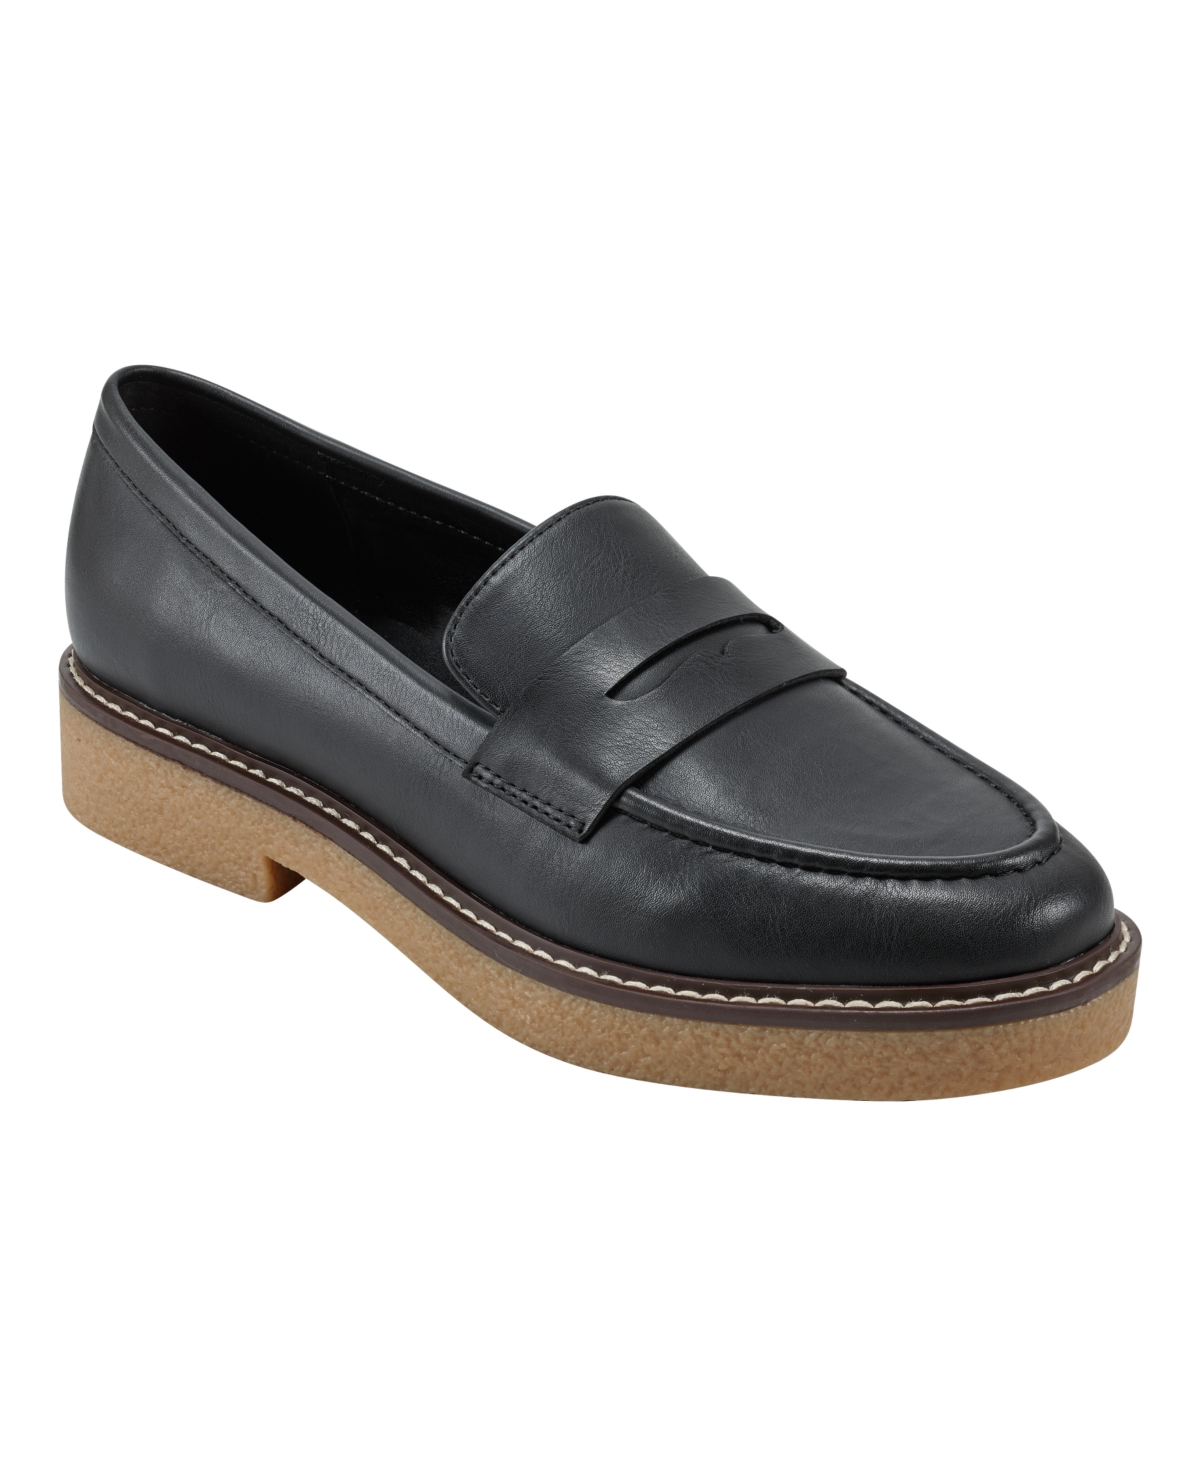 Women's Farley Slip On Almond Toe Casual Loafers - Black